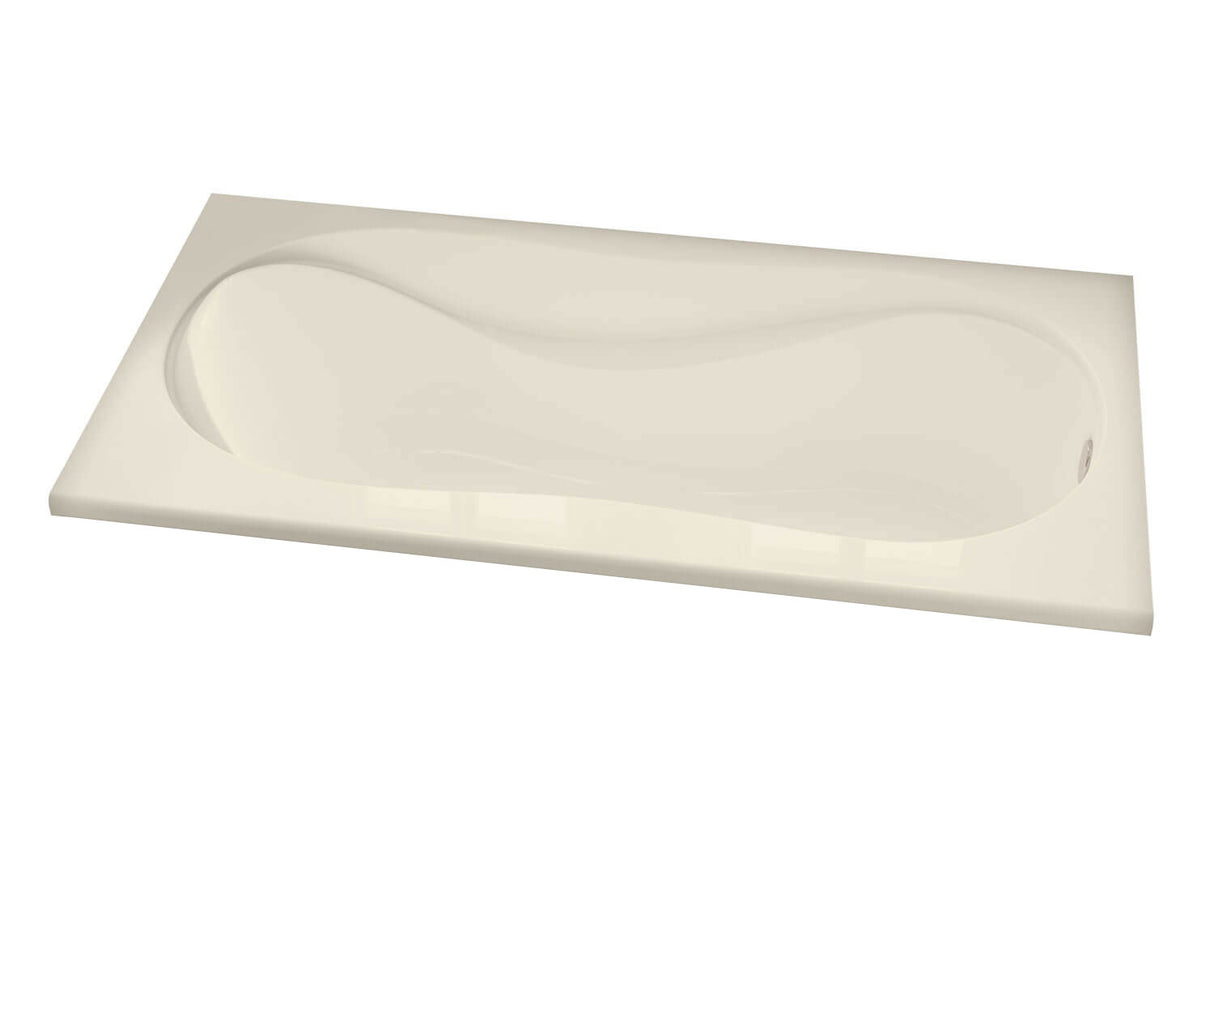 MAAX 102722-000-004-000 Cocoon 6032 Acrylic Drop-in End Drain Bathtub in Bone